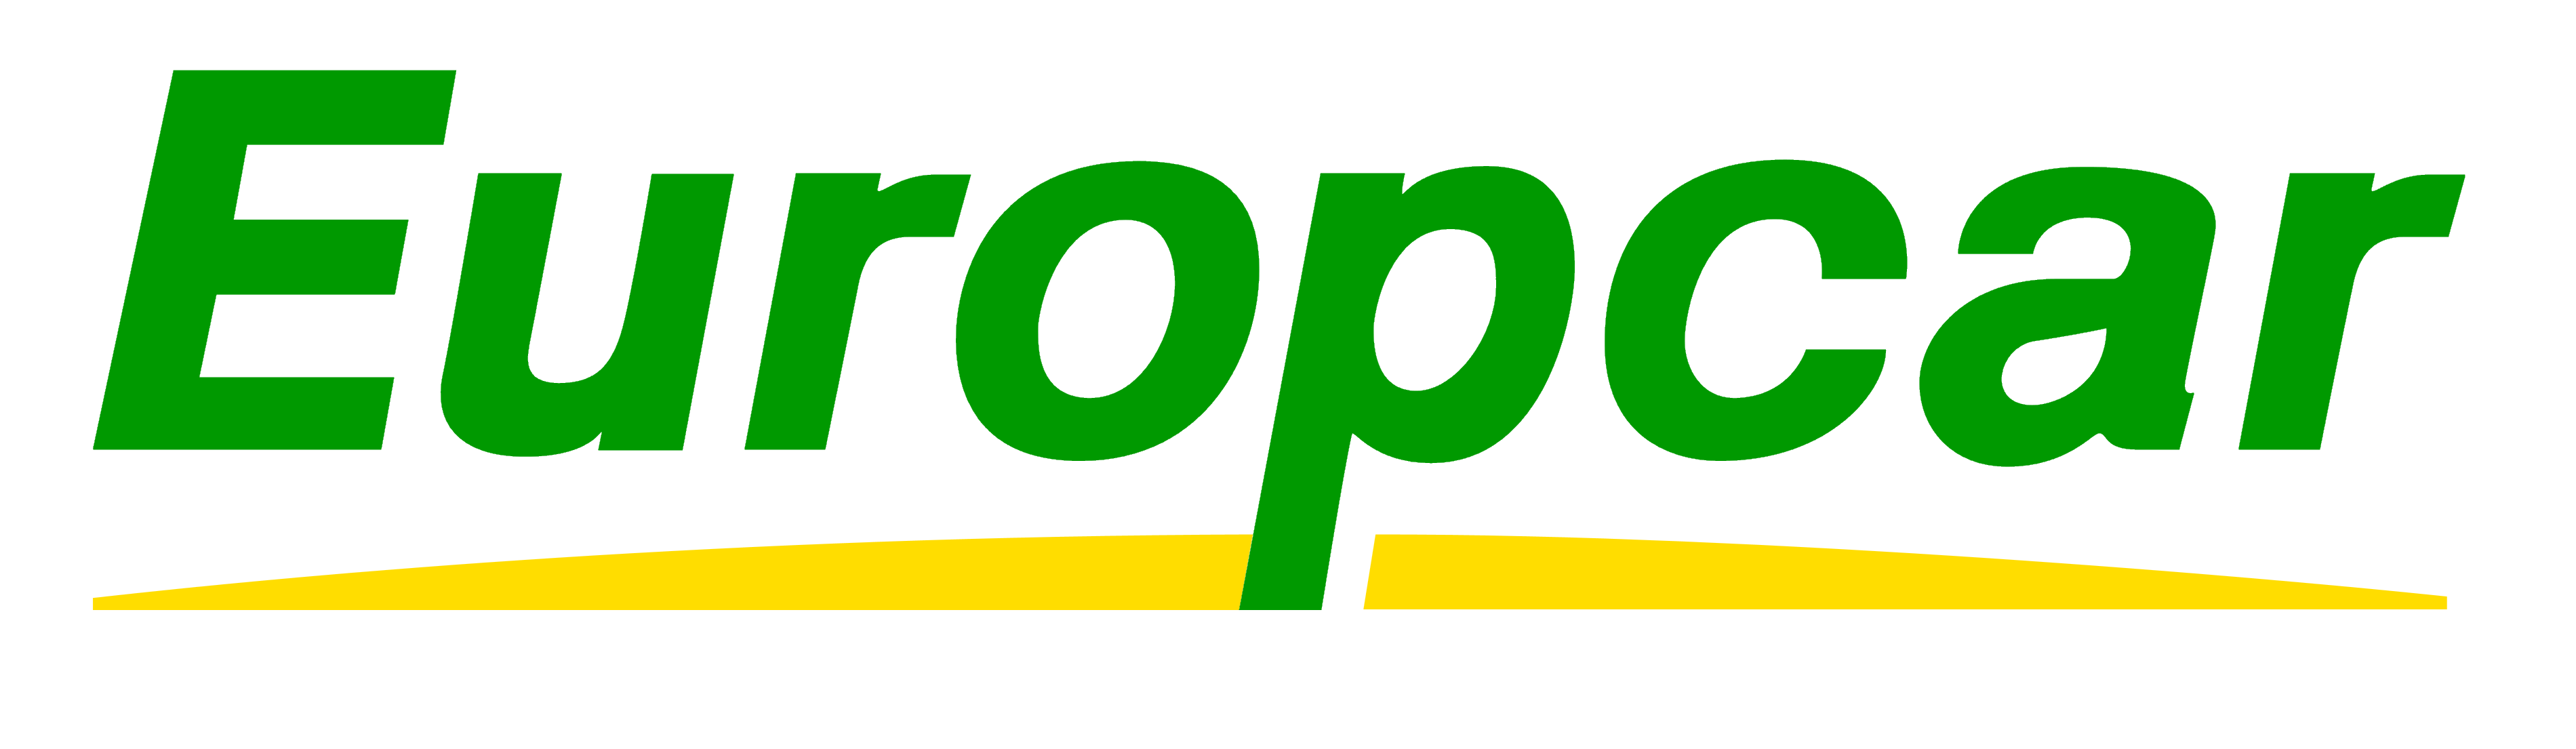 Europcar_logo